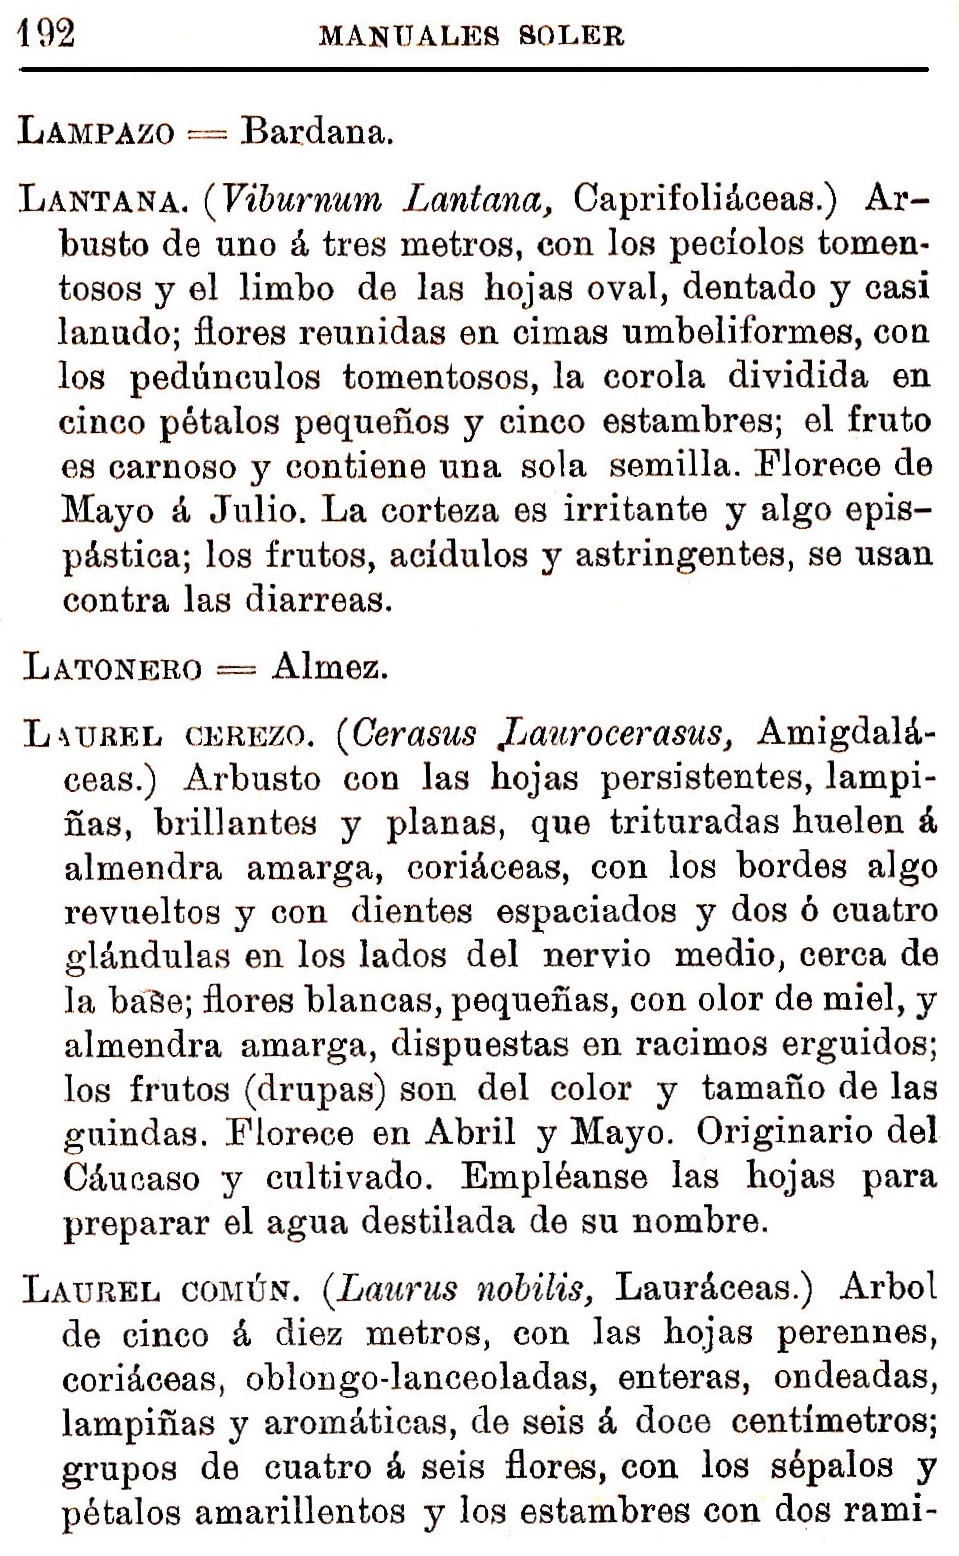 Plantas Medicinales. Blas Lazaro Ibiza. Índice alfabético de plantas. L. Lampazo.